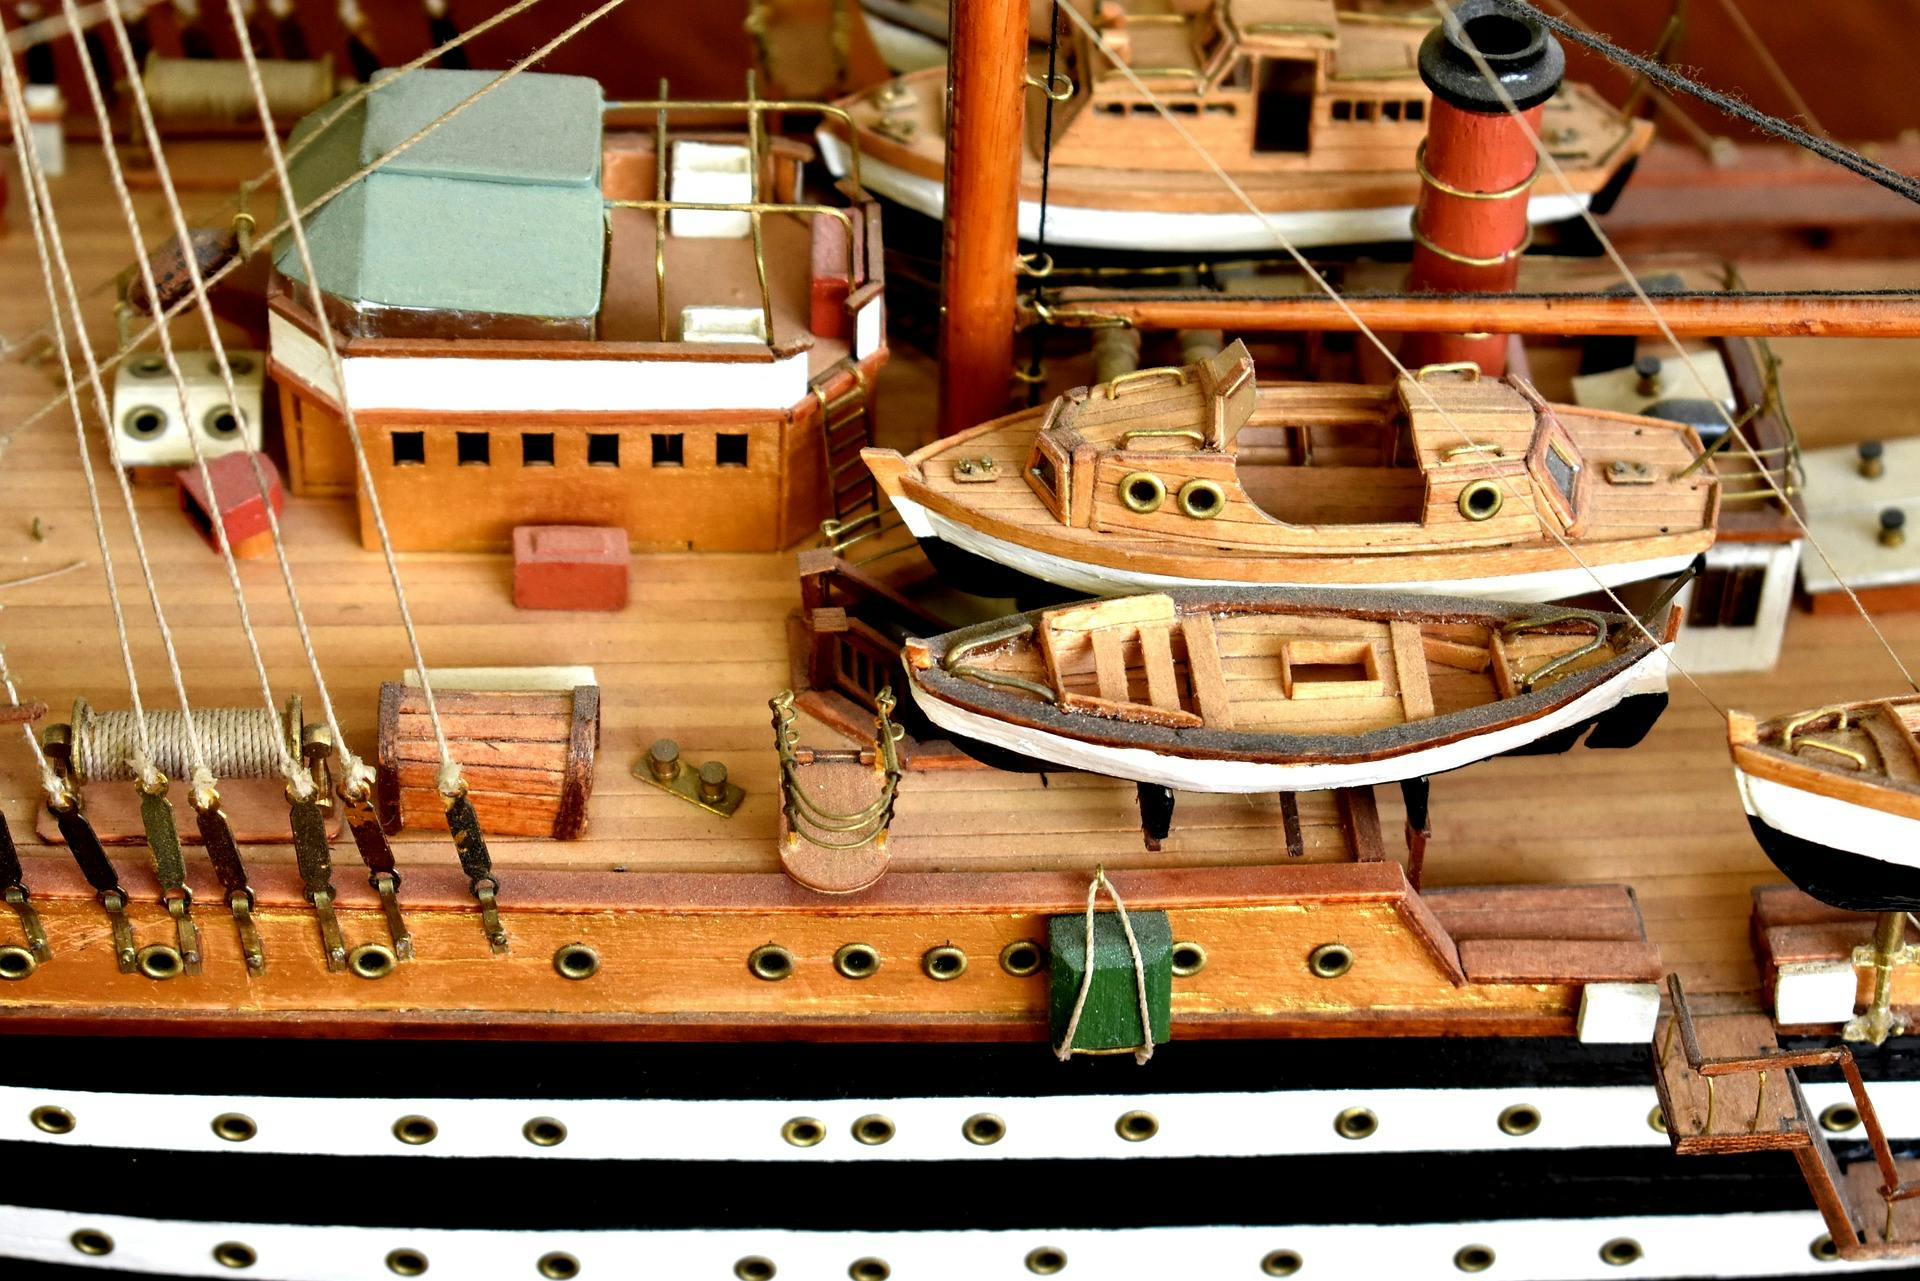 Наша мировая модель была построена специально. Модель парусника Америго Веспуччи. Модели кораблей судомоделирование. Судомоделирование парусных кораблей. Модель корабля парусник судомоделирование.